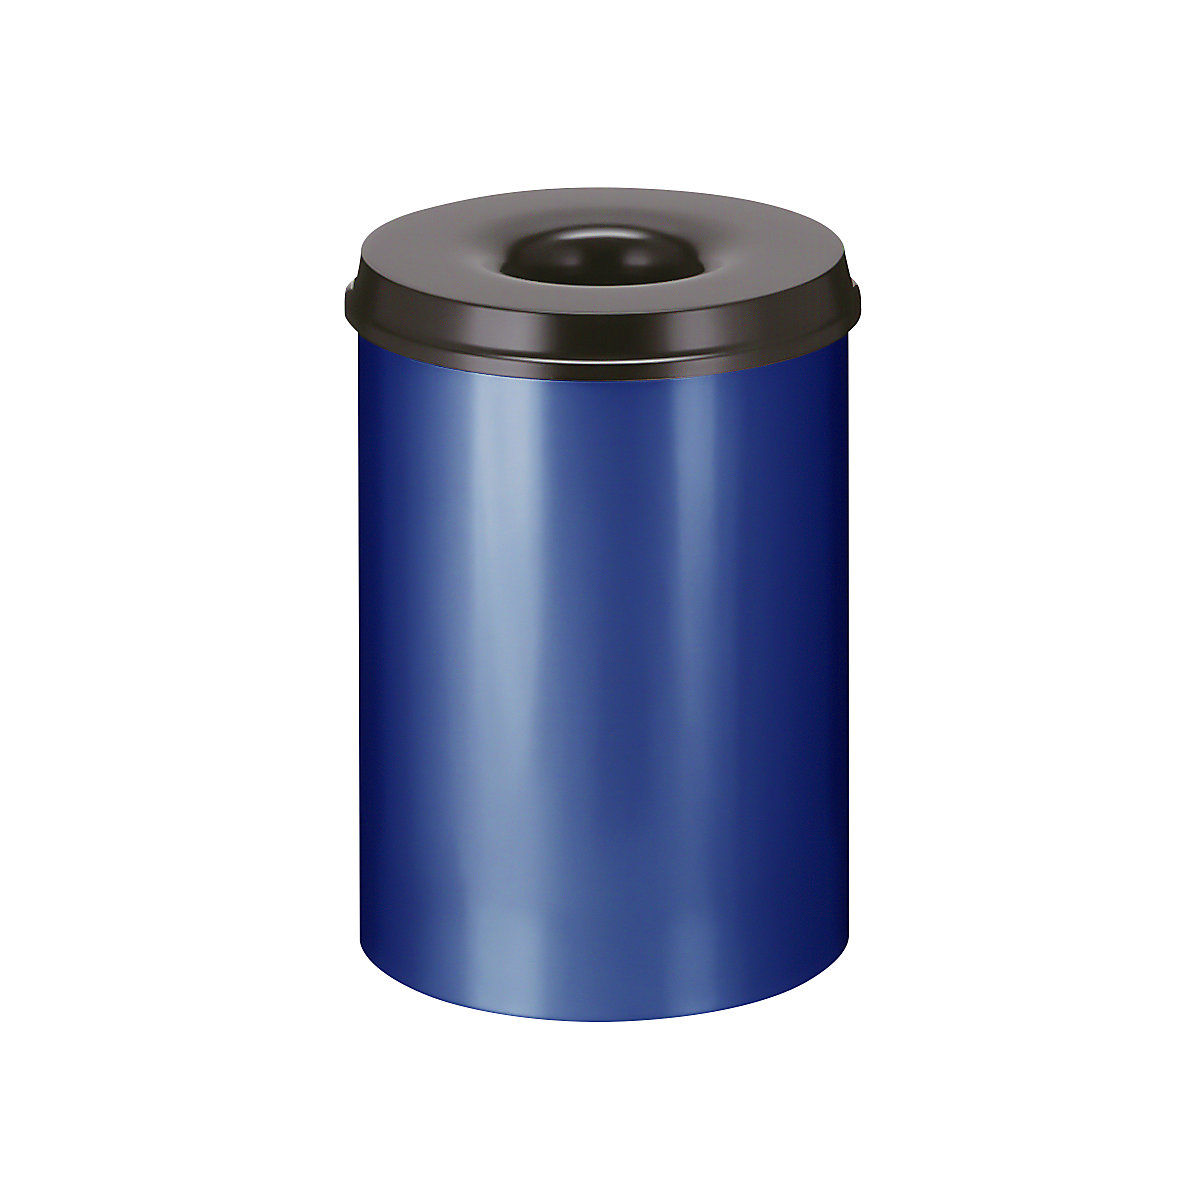 Sicherheits-Papierkorb, Stahl, selbstlöschend, Volumen 30 l, HxØ 470 x 335 mm, Korpus blau / Löschkopf schwarz-10